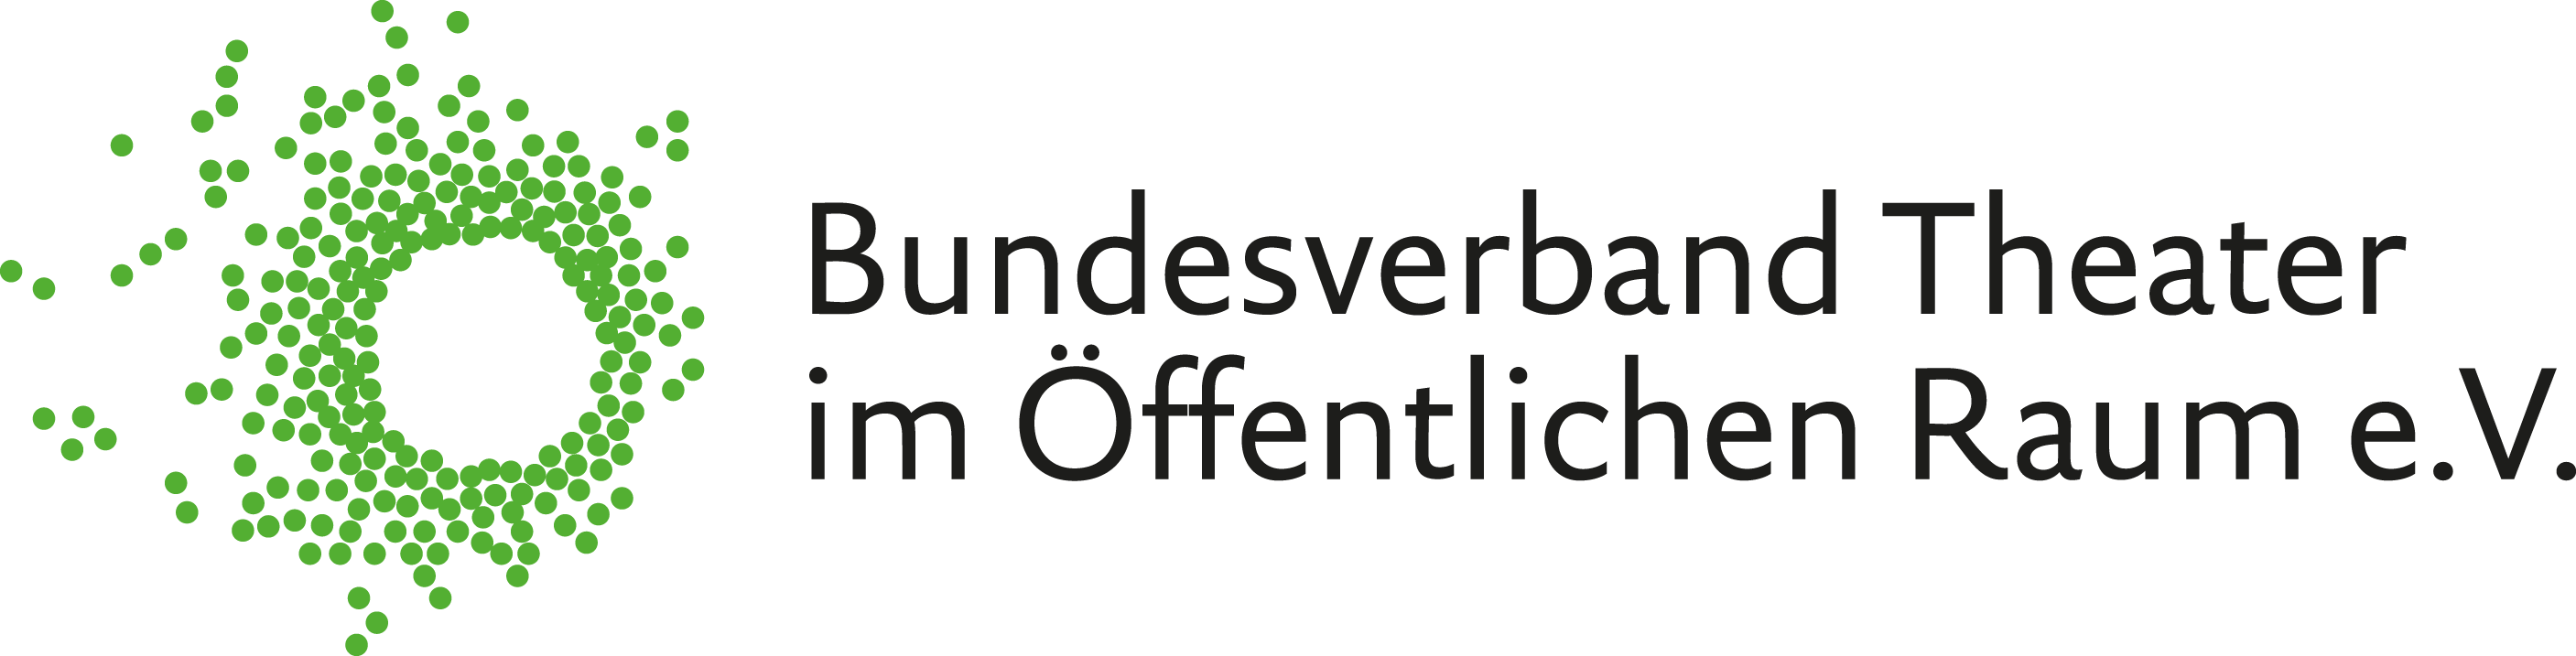 Logo des Bundesverbands Theater im Öffentlichen Raum e. V. (assoziiertes Mitglied)